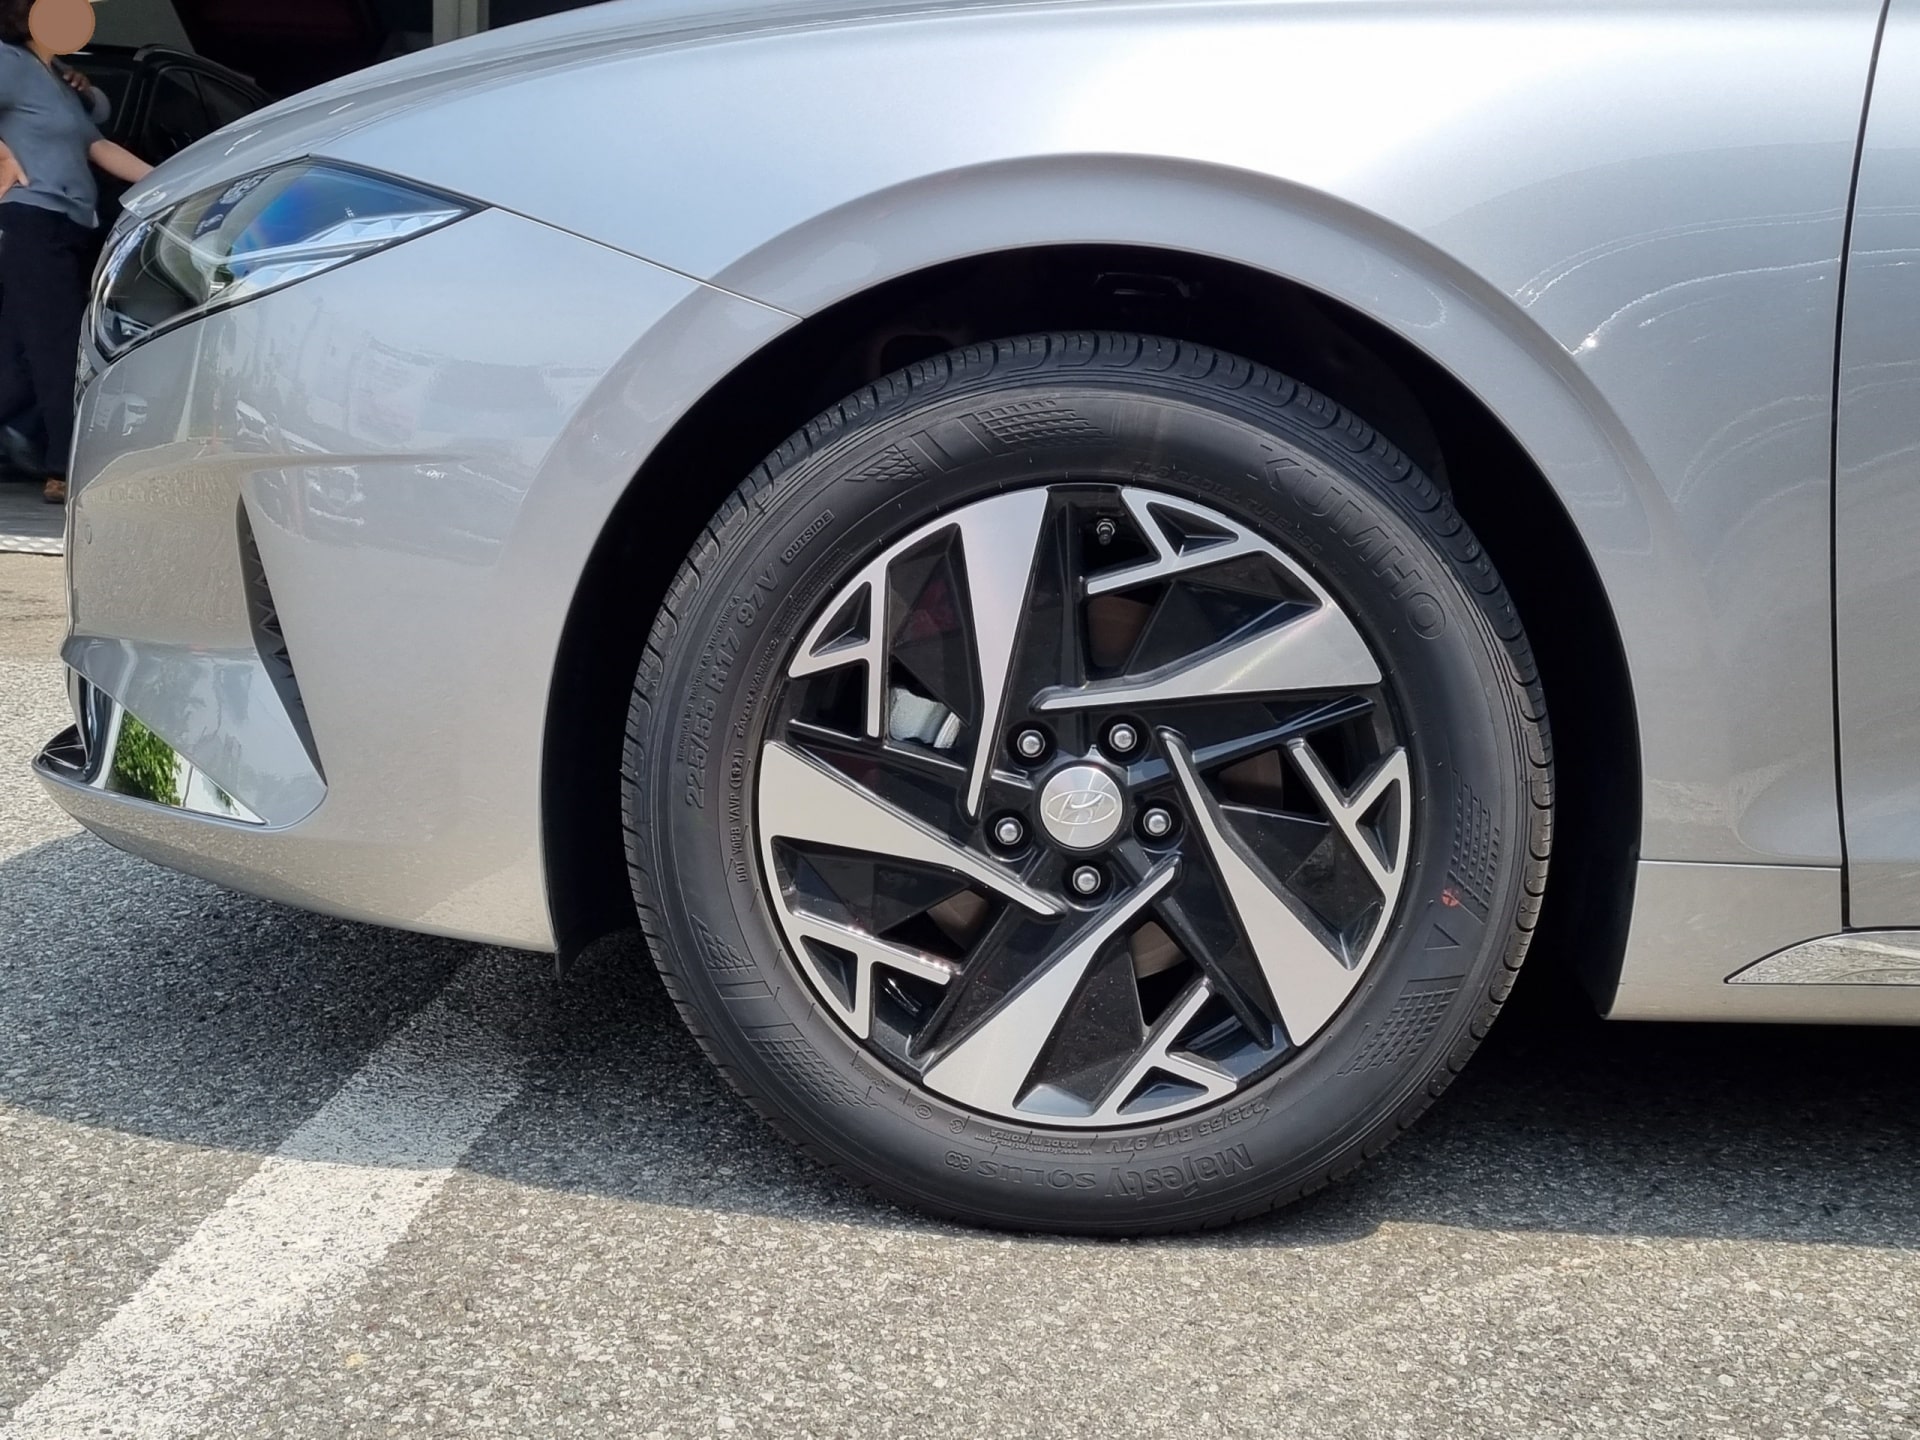 그랜저 르블랑 하이브리드에는 17인치 휠 타이어가 기본입니다. 1인치 더 늘리면 안 될까요?